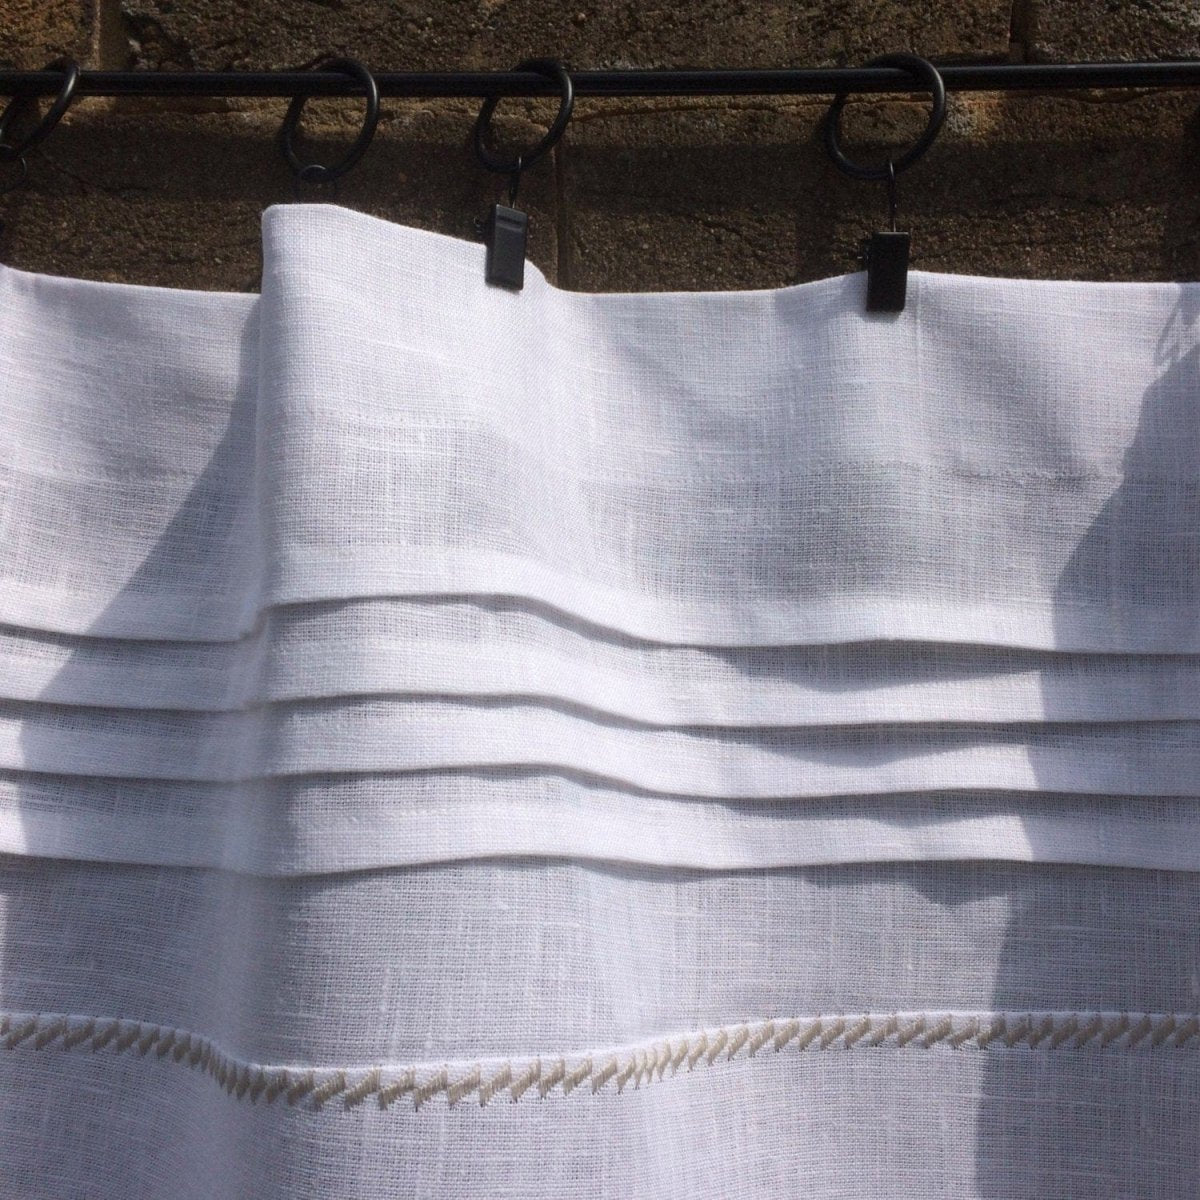 Culcheth White Linen Decorative Bistro Curtain - Linen and Letters